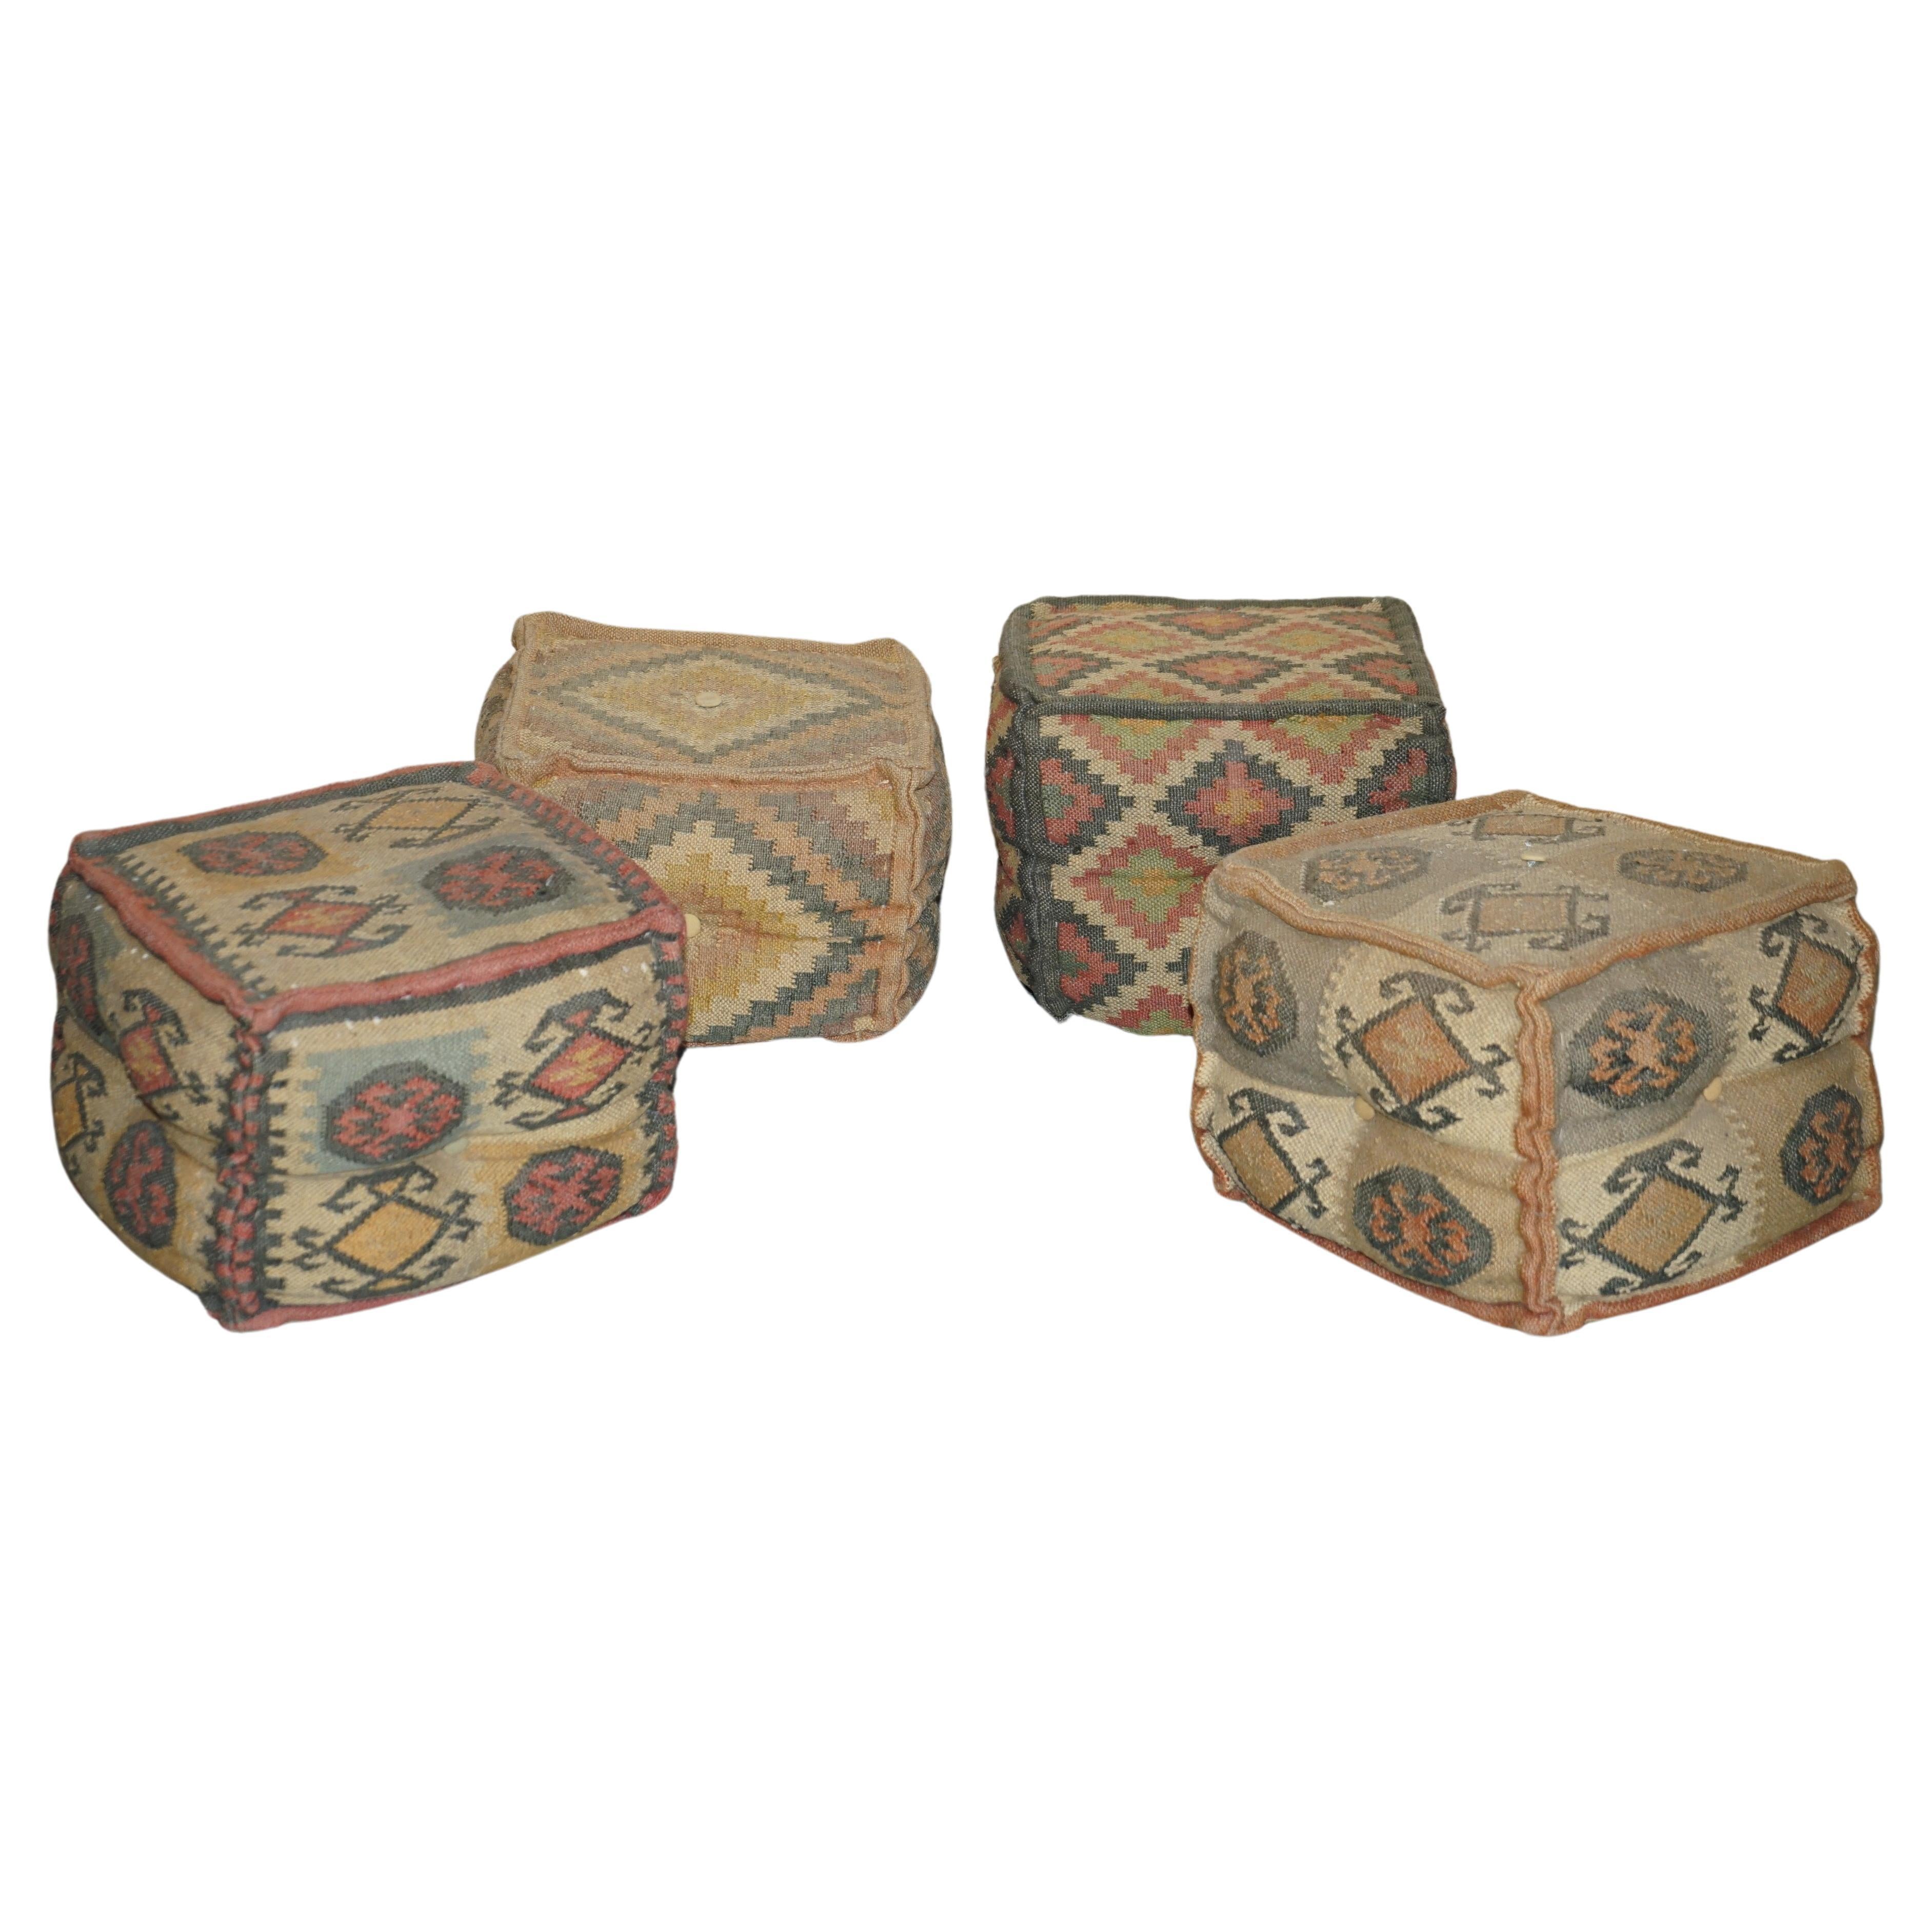 Suite de 4 tabourets cubiques Kilim vintage de style George Smith, datant des années 1960 environ en vente